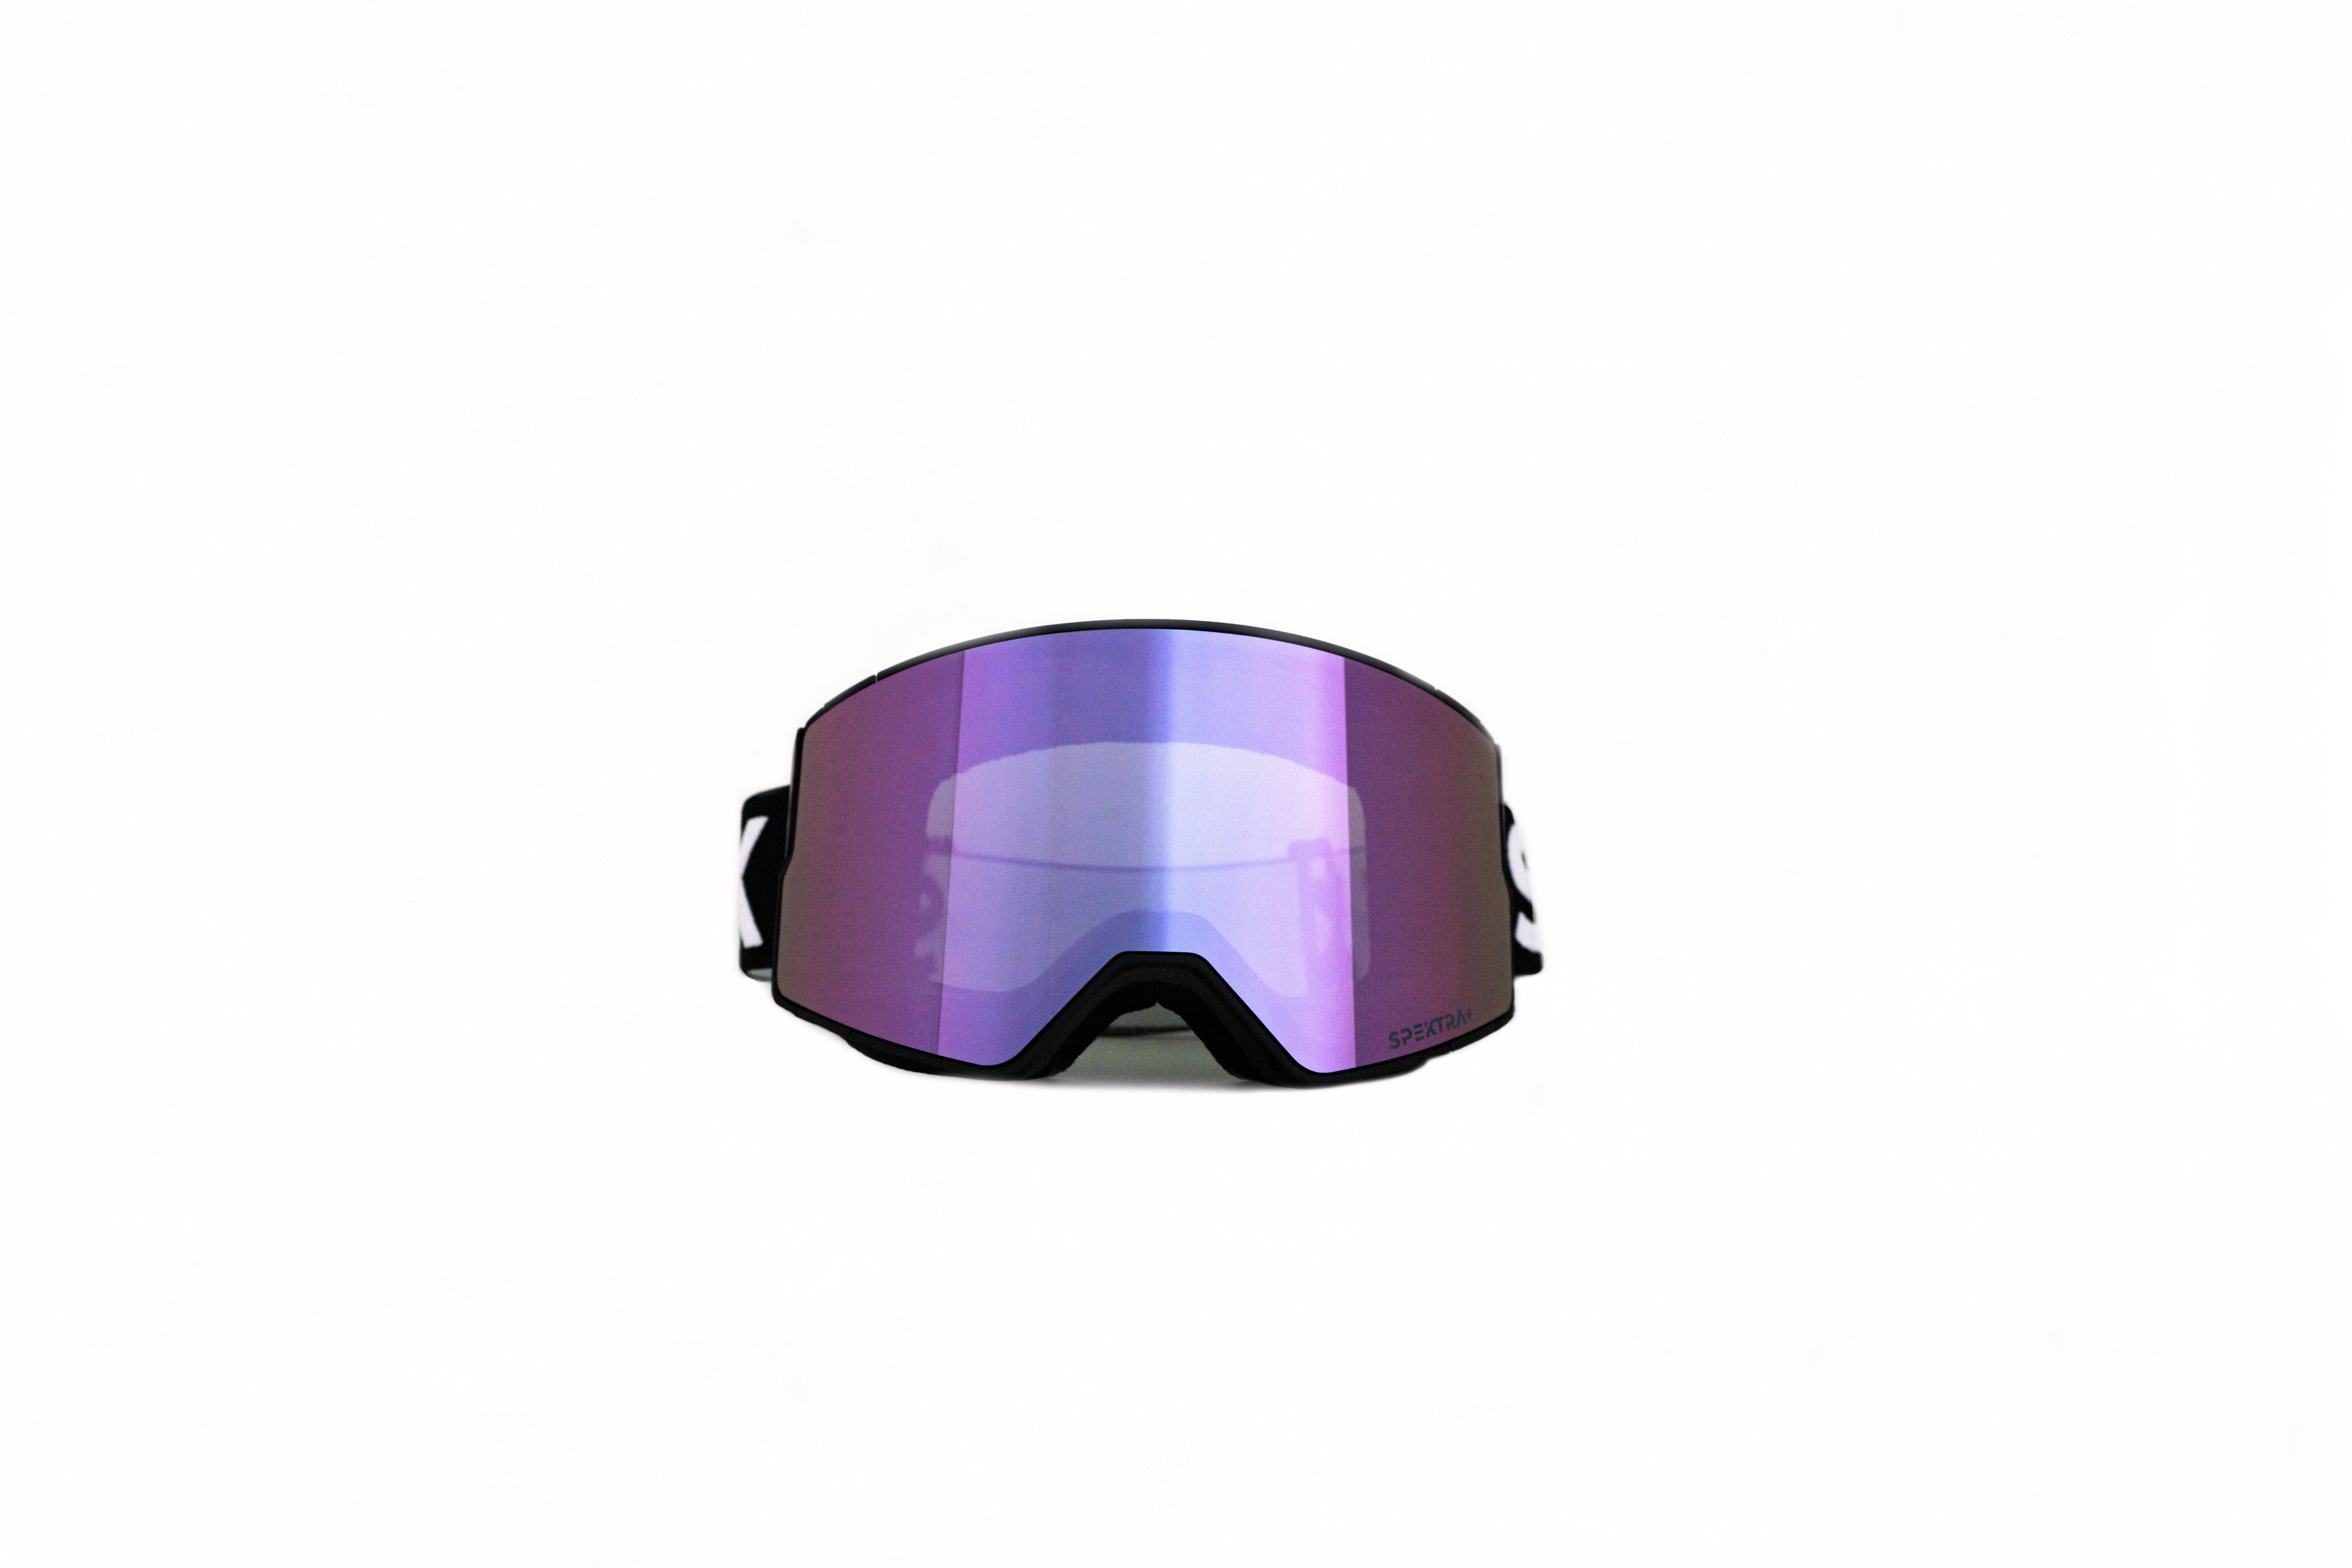 EDGE ski goggles